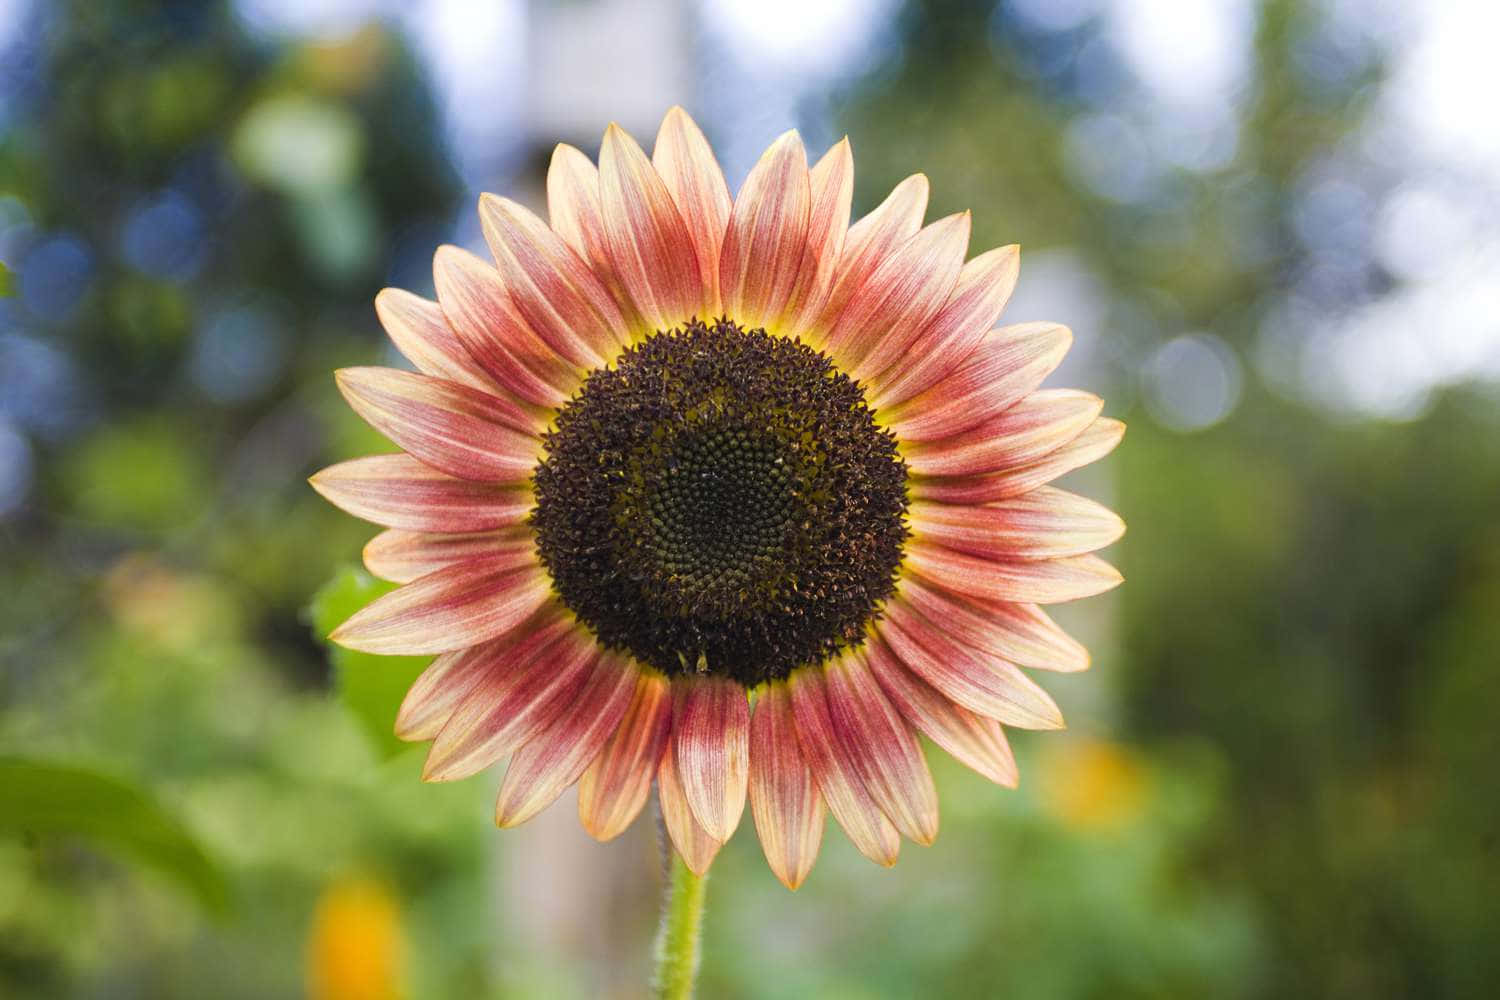 Einesonnenblume Mit Leuchtend Gelben Blütenblättern, Die In Der Sonne Baden.